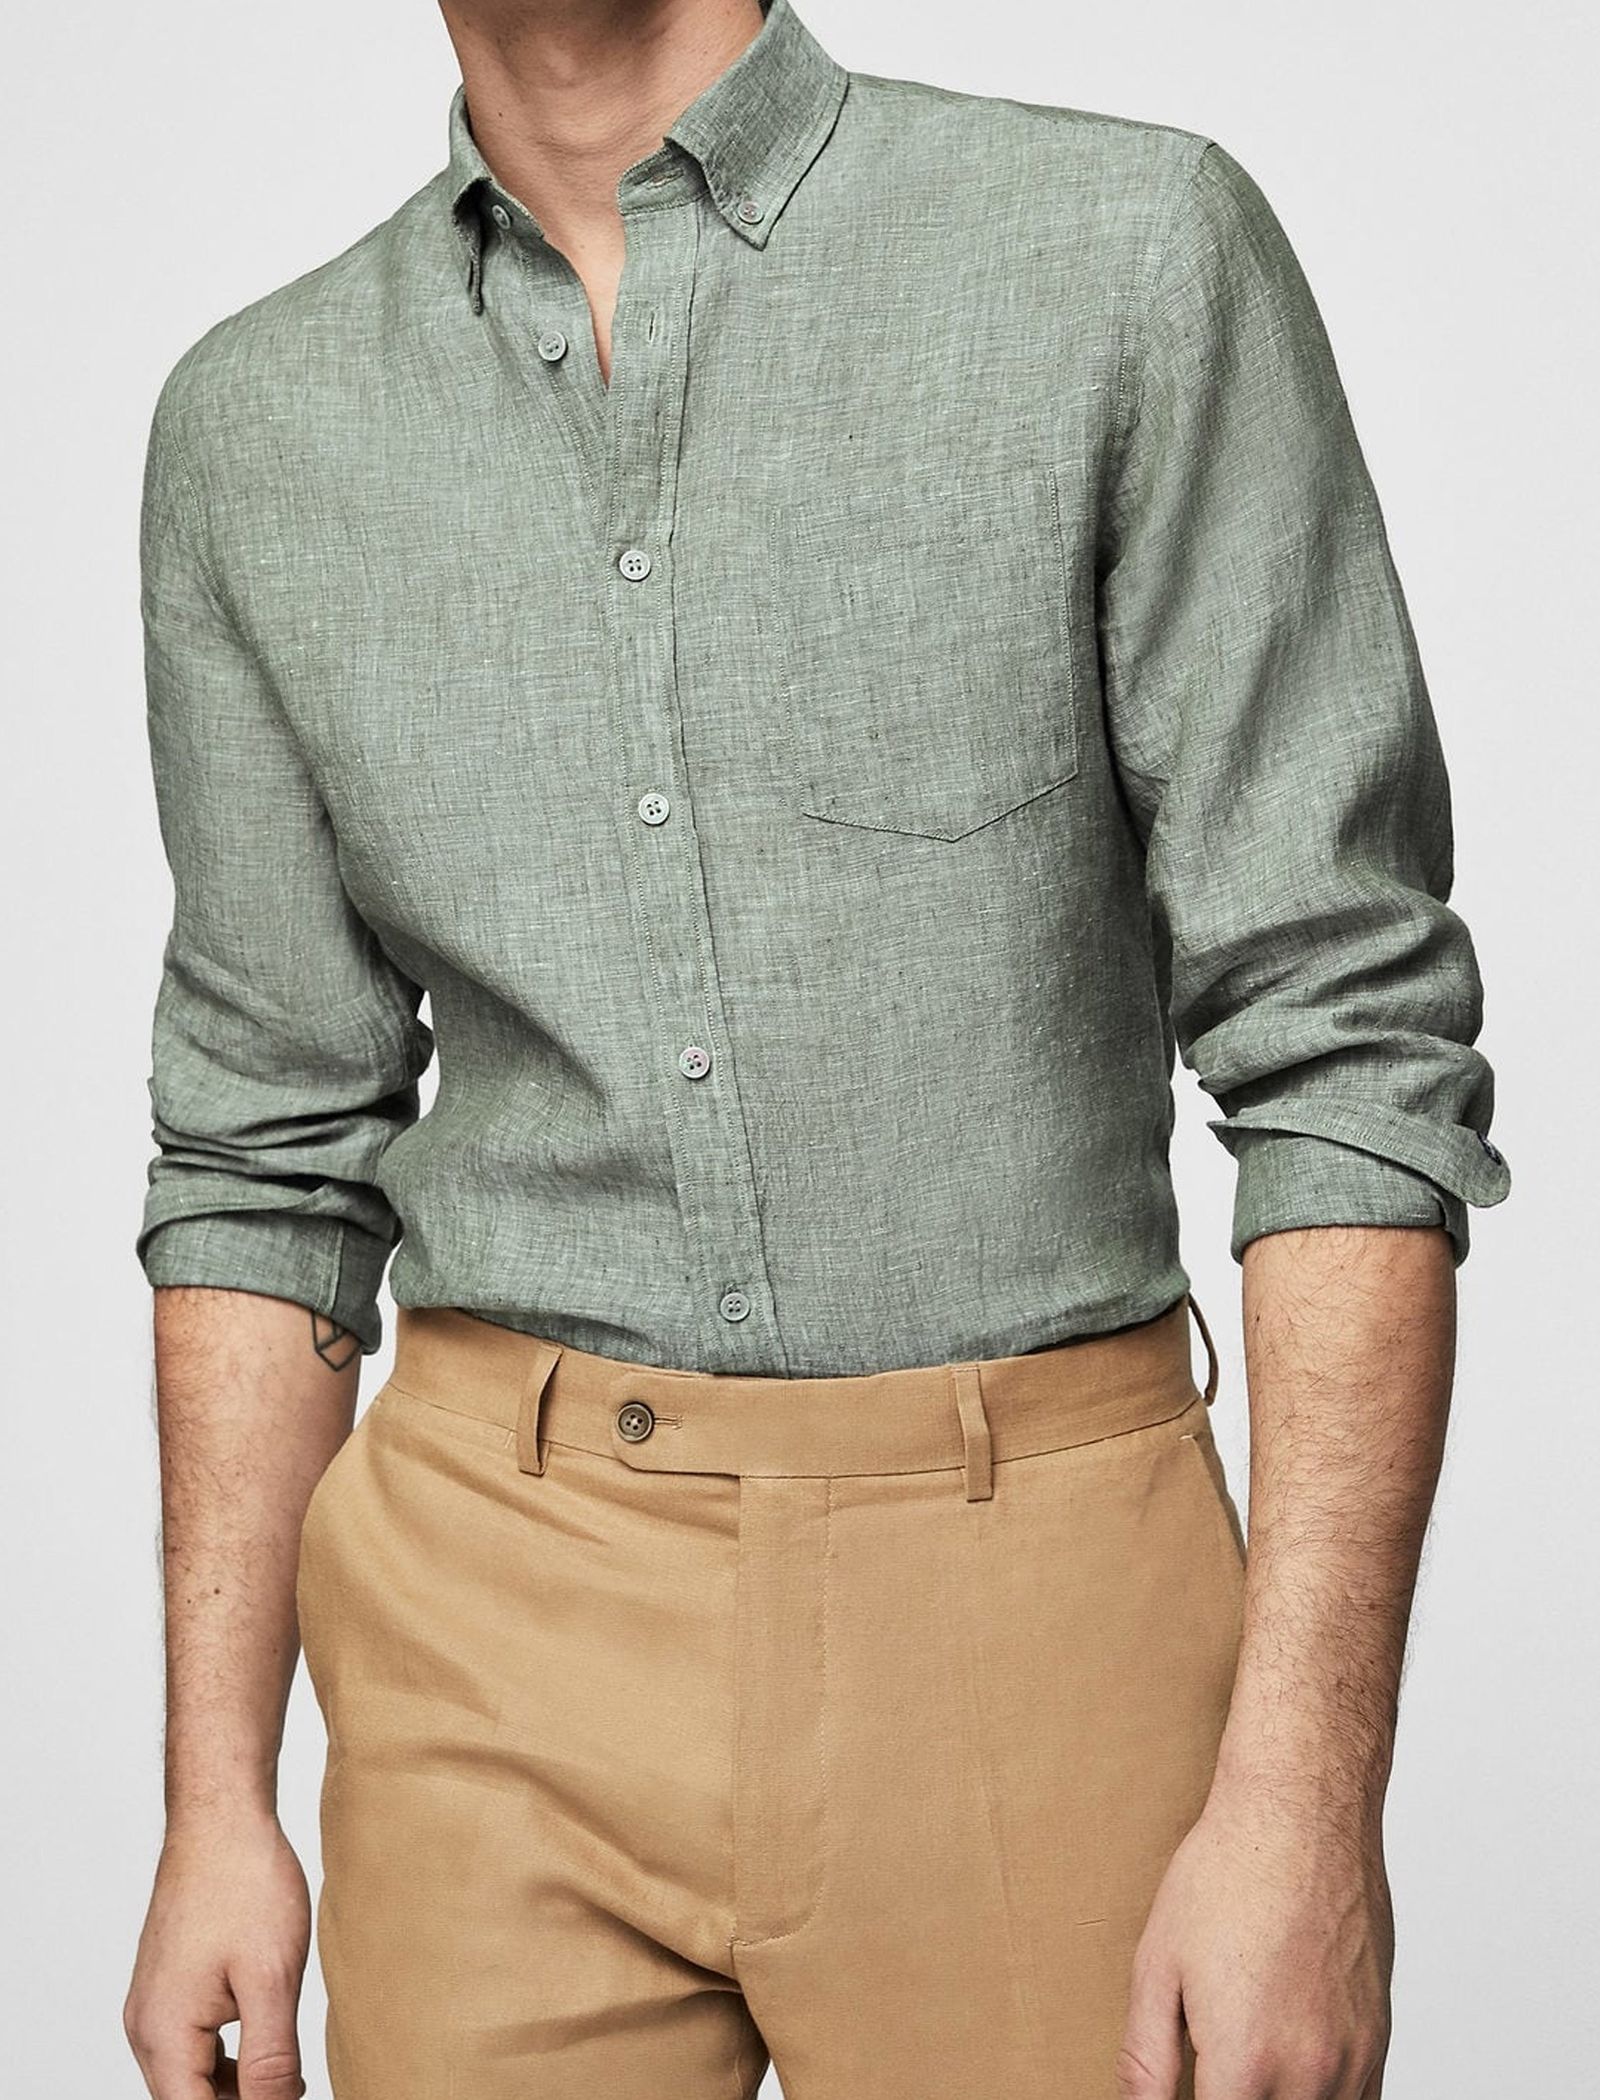 پیراهن آستین بلند مردانه - مانگو - سبز  - 3